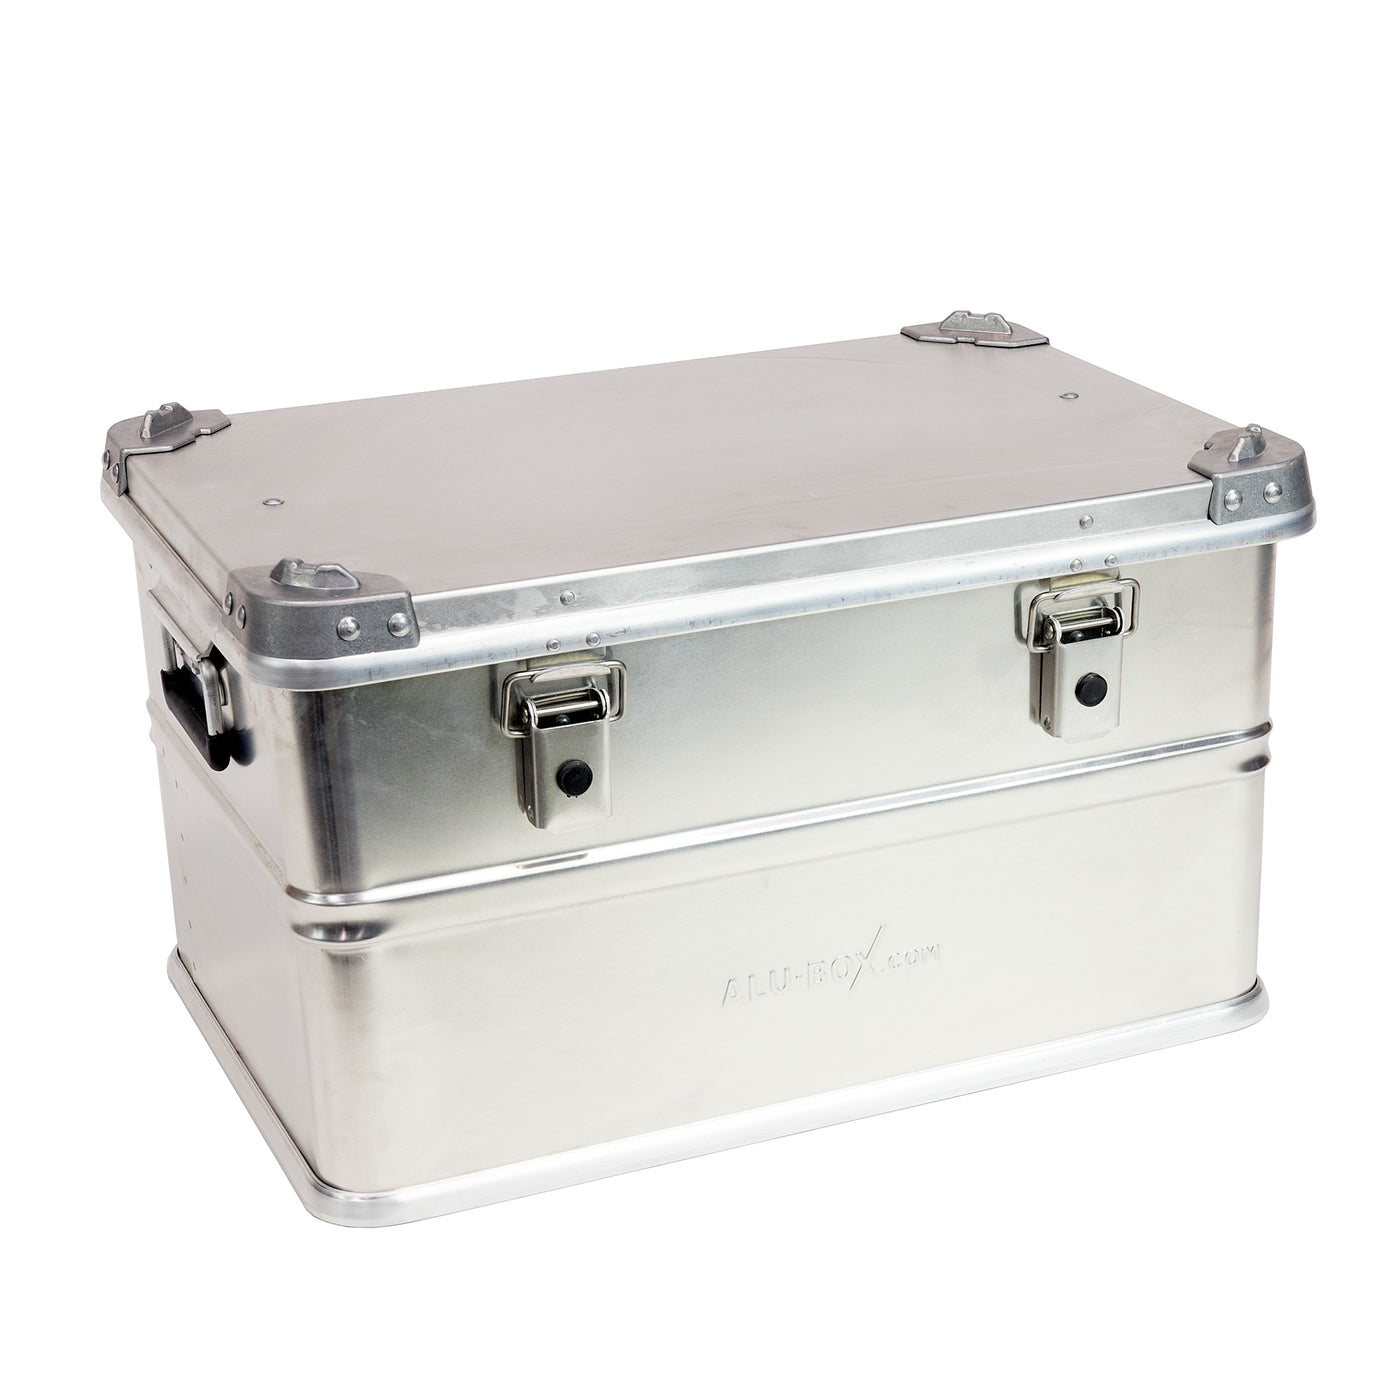 Alubox Aluminum Storage Case